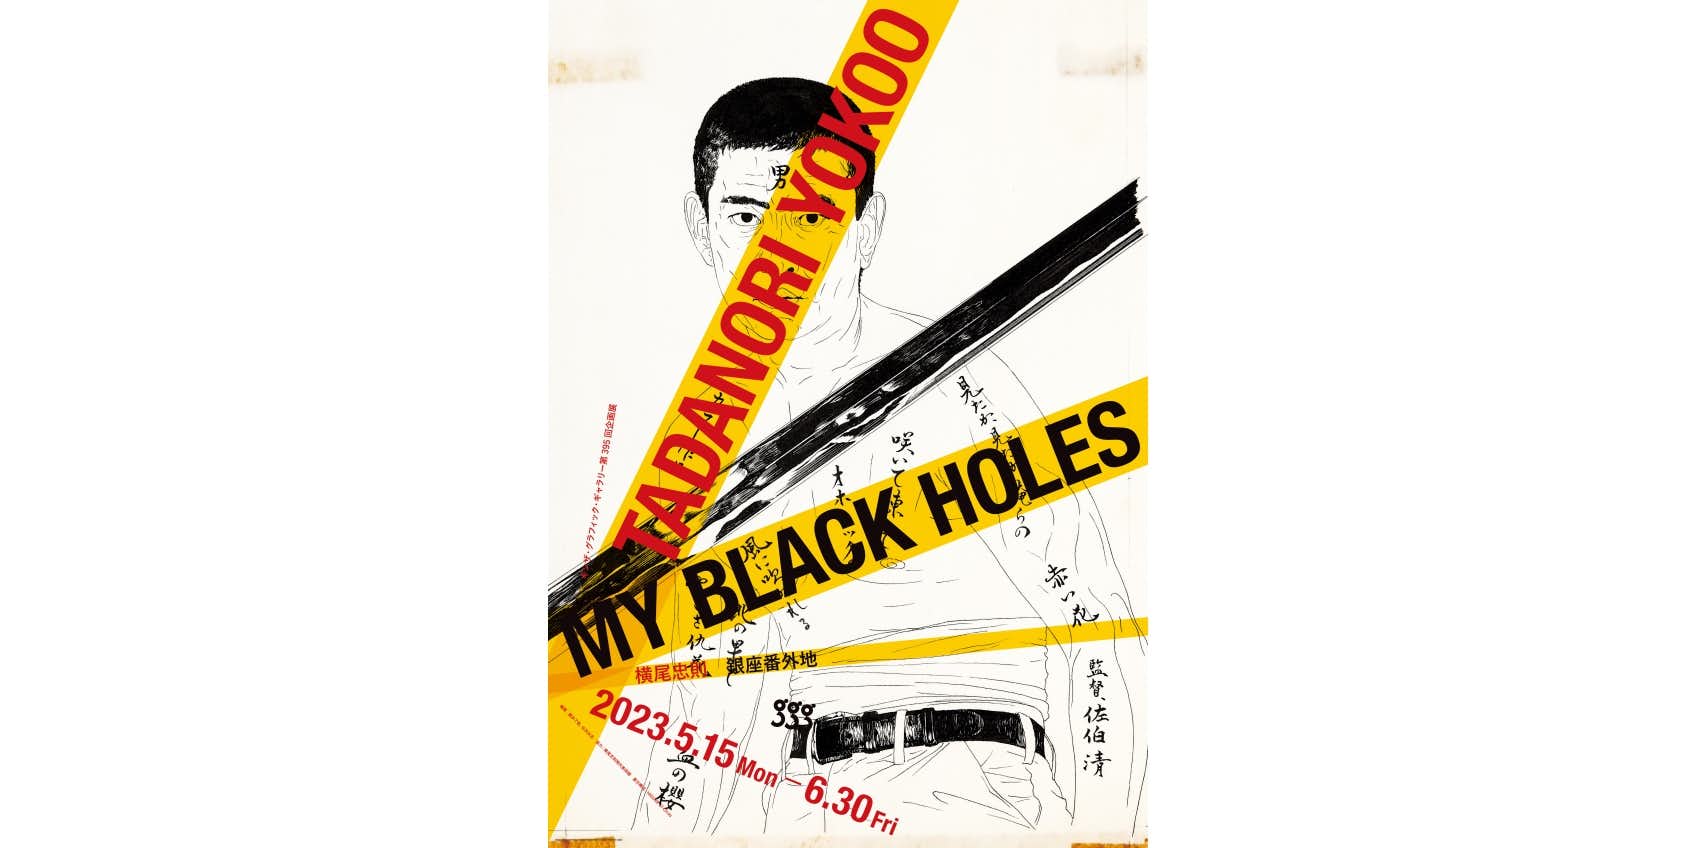 横尾忠則「銀座番外地 Tadanori Yokoo My Black Holes」（ギンザ 